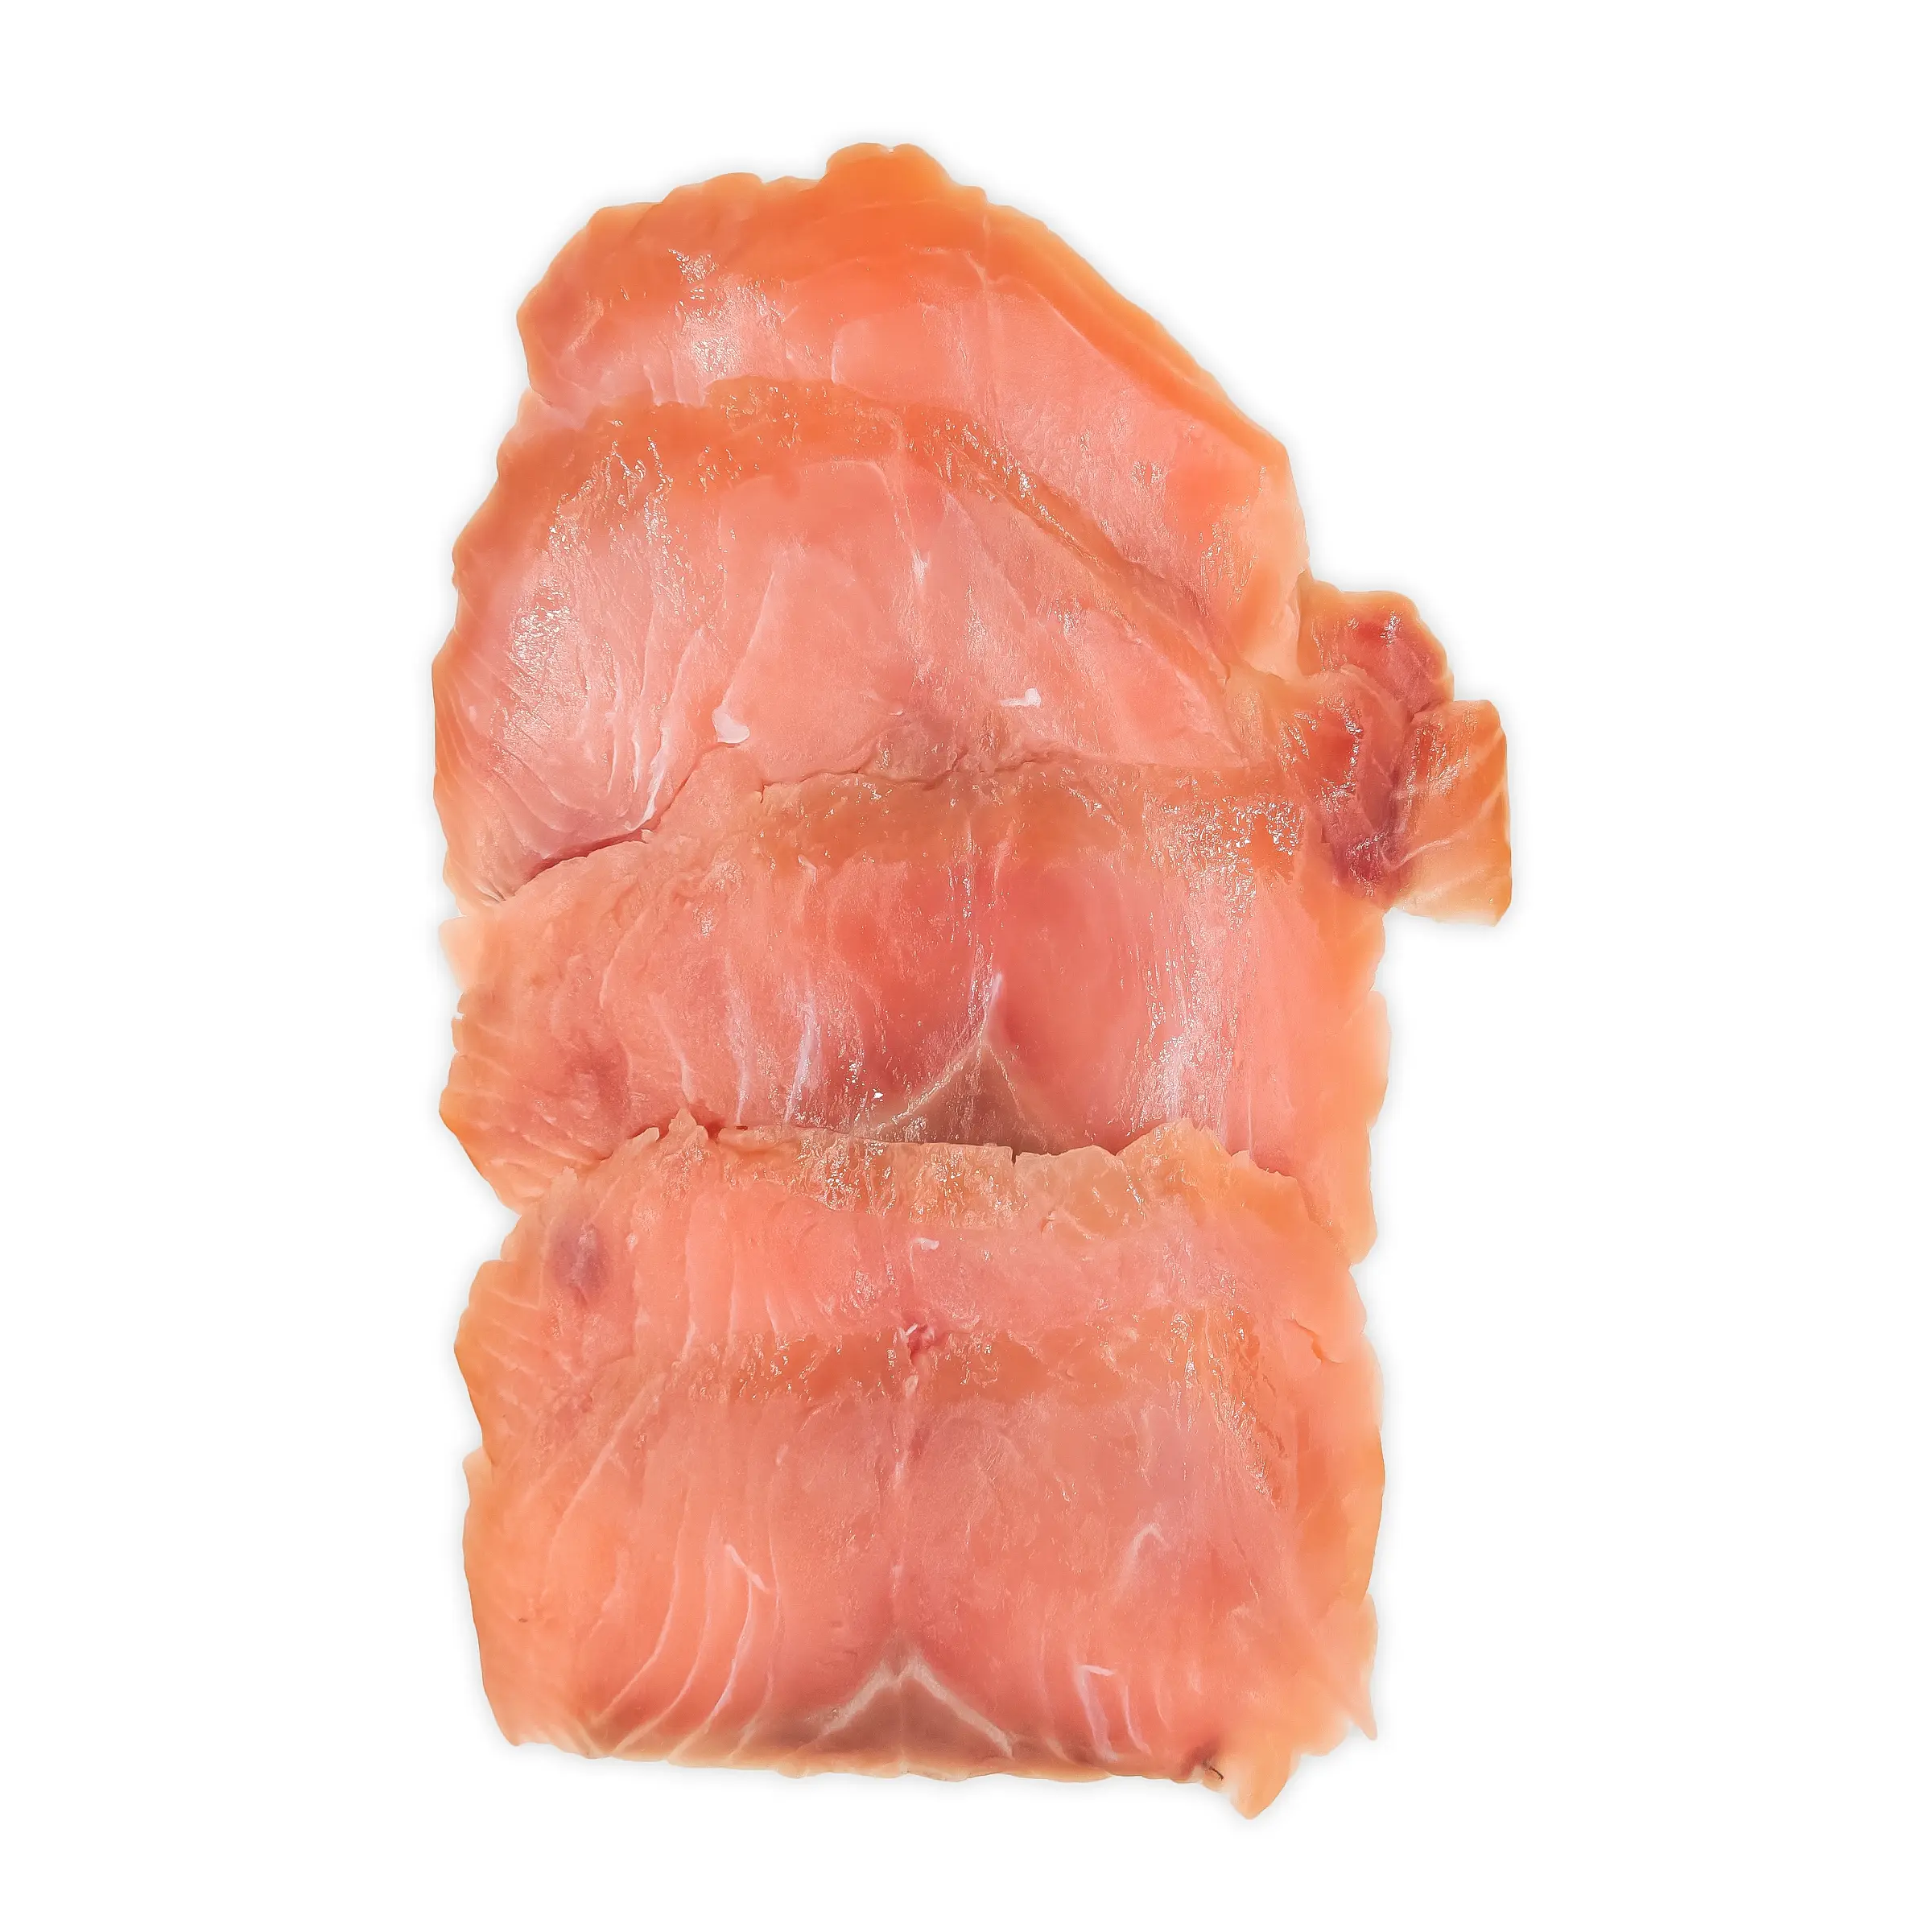 pink smoked salmon - How do you eat pink smoked salmon